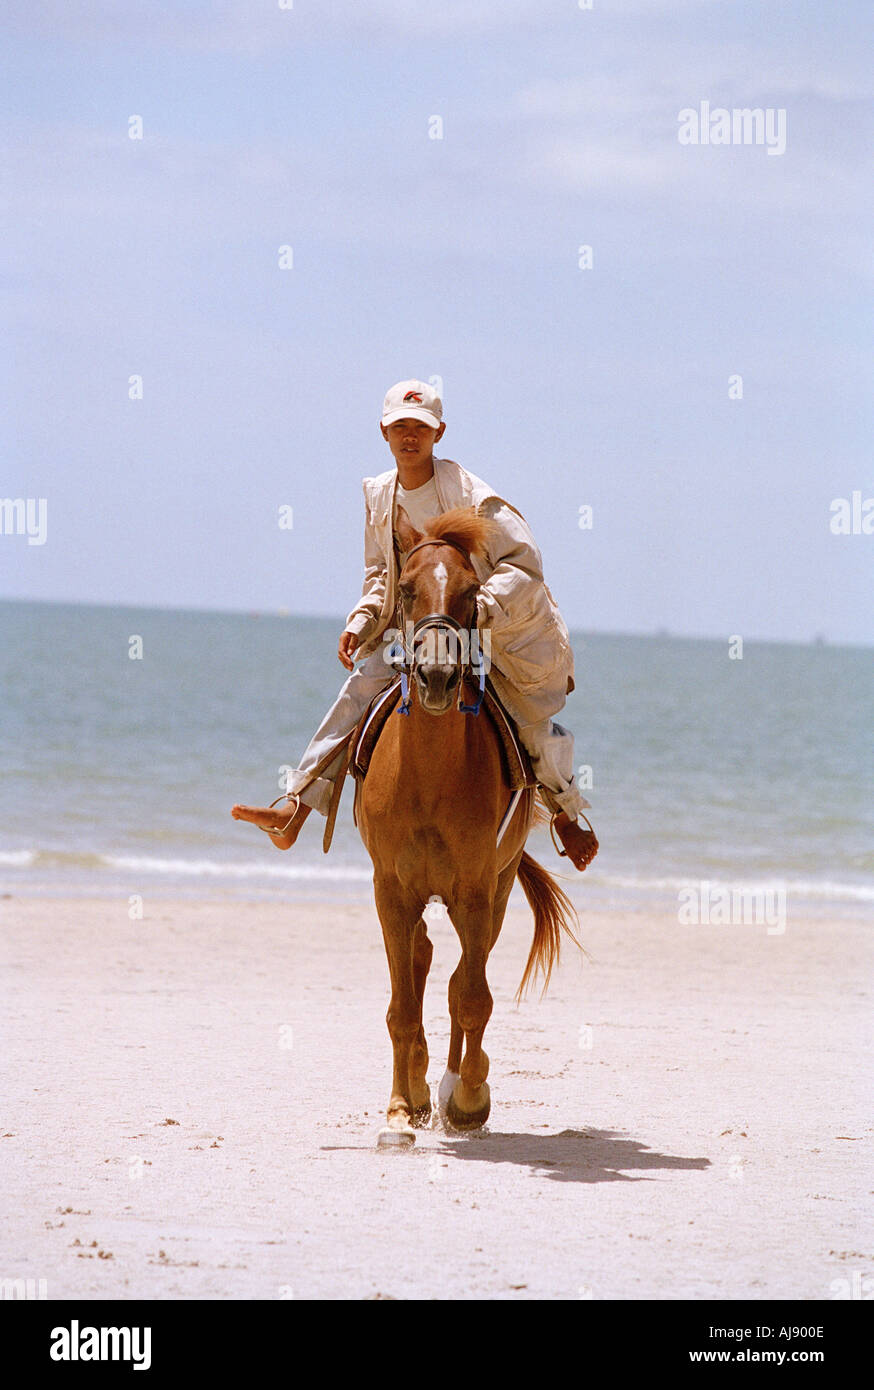 Young boy riding a horse on a Thai Beach Stock Photo